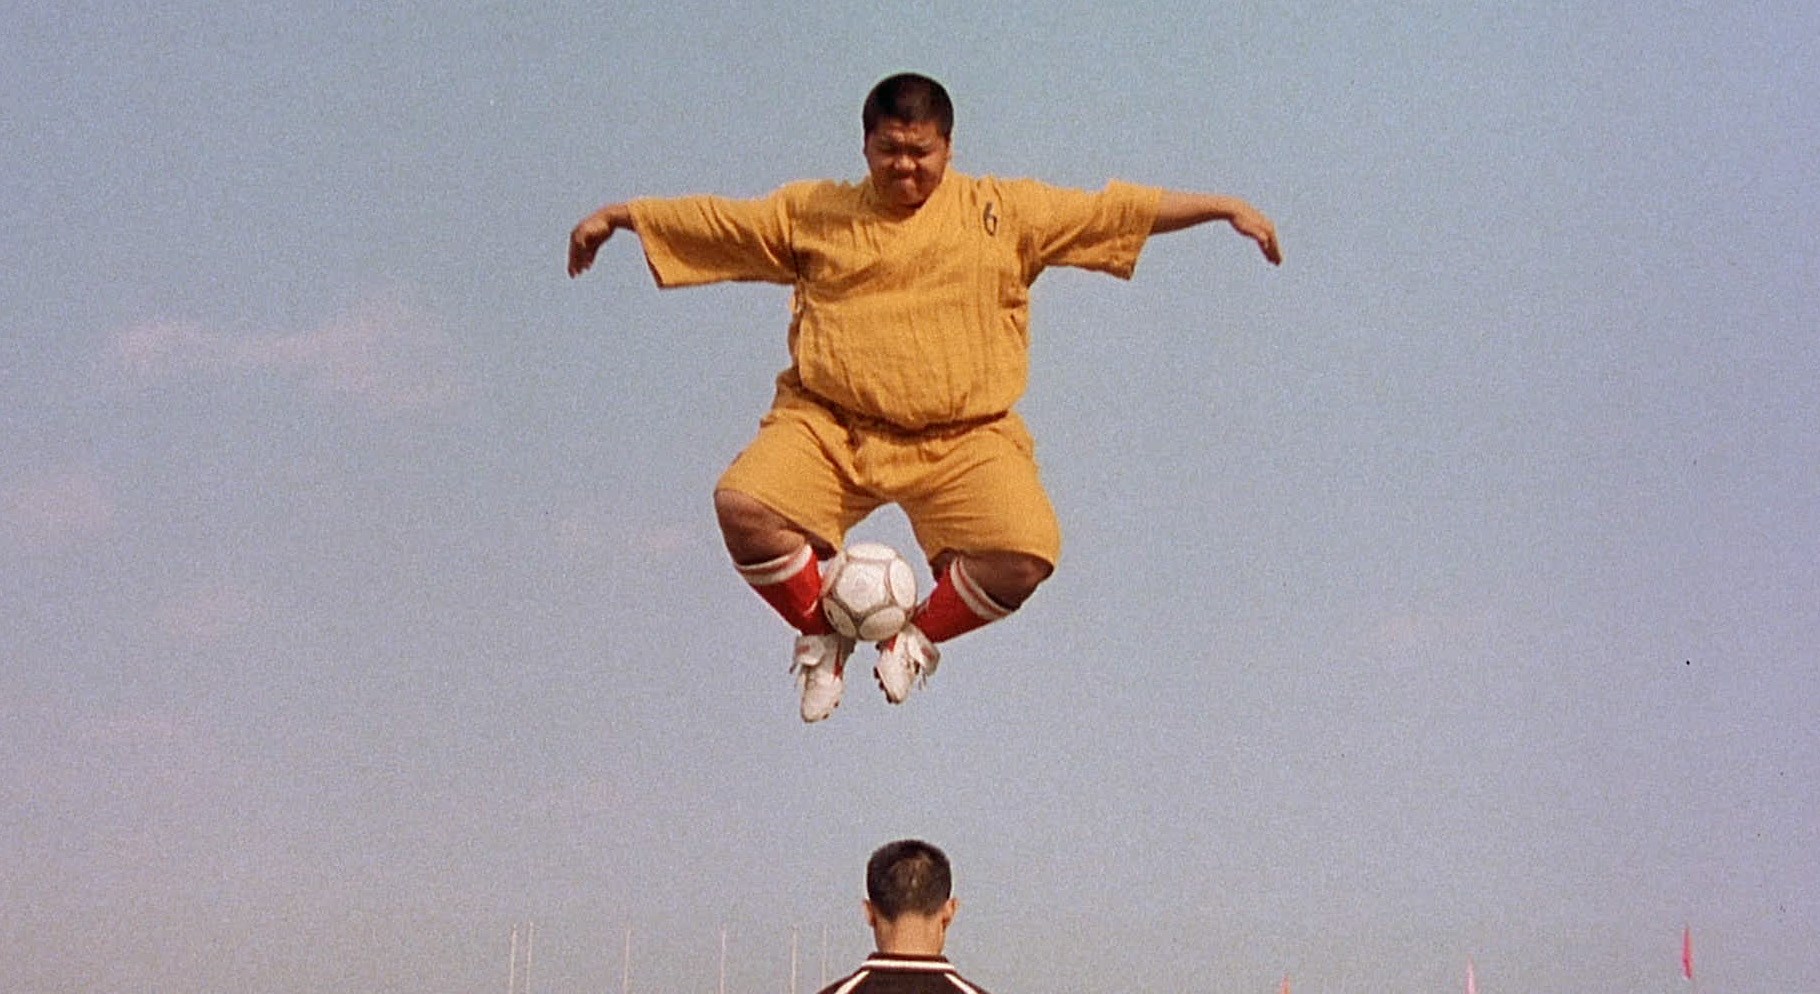 Shaolin Soccer yönetmeninden devam filmi müjdesi geldi